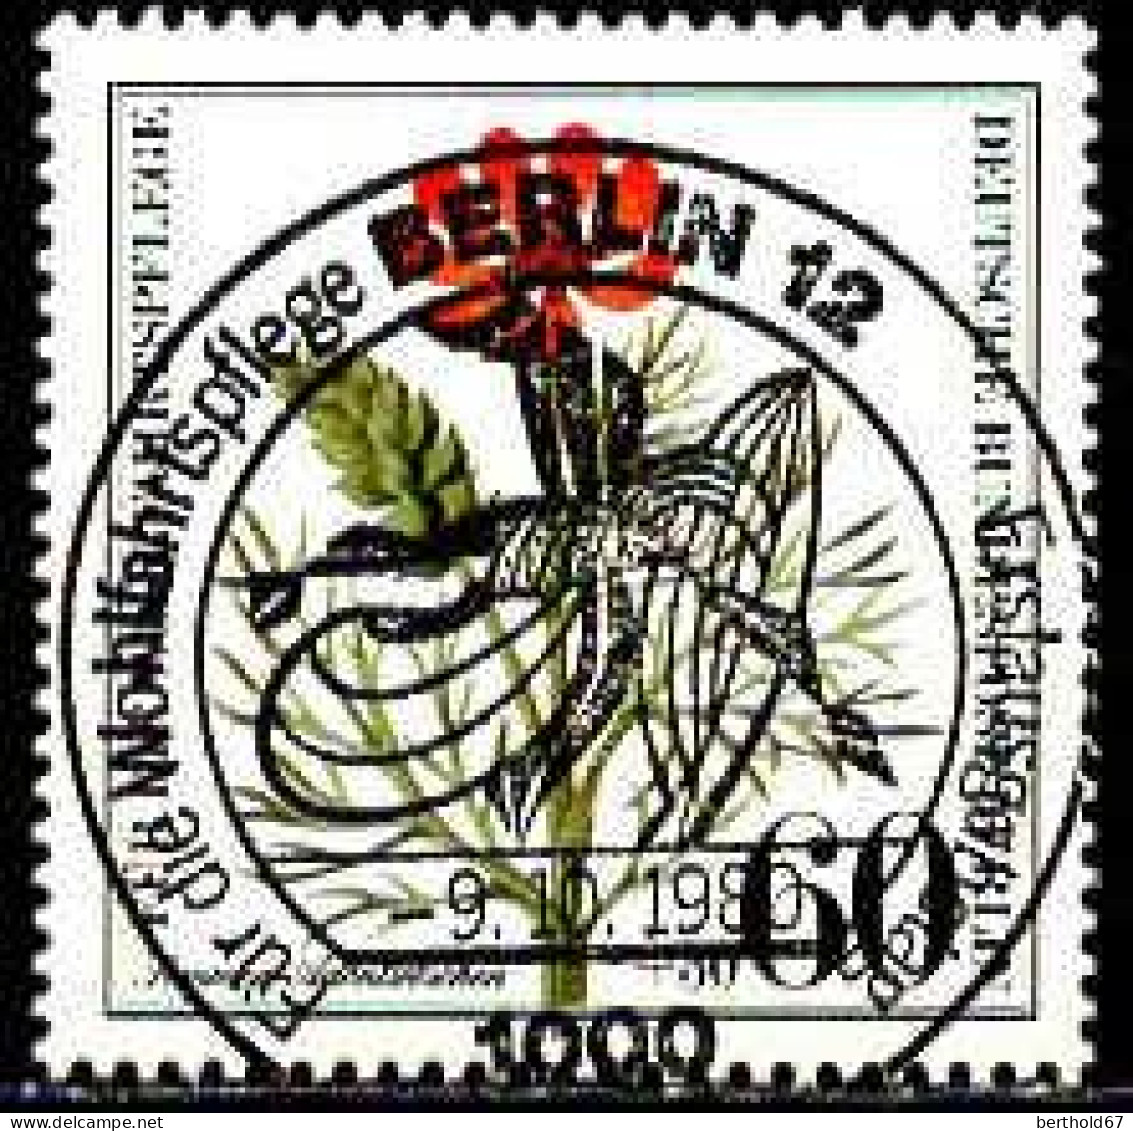 Berlin Poste Obl Yv:590/593 Bienfaisance Herbes Des Champs (TB Cachet Rond) - Usati